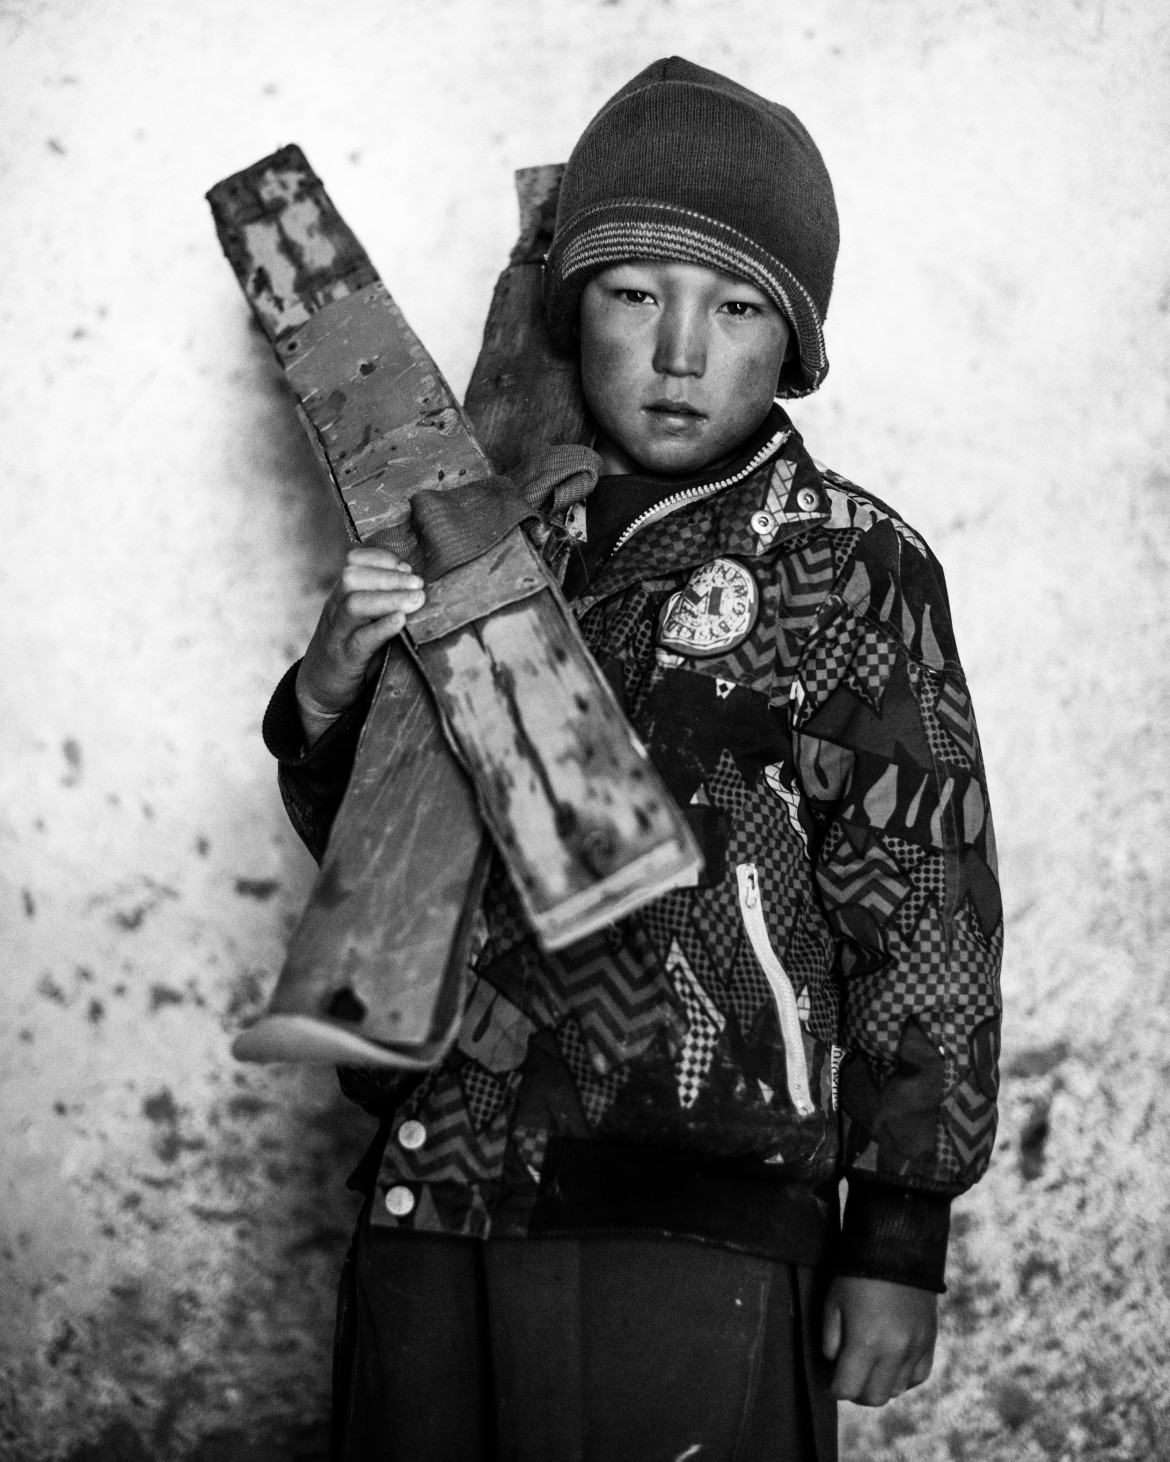 fot. Andrew Quilty, z cyklu "High Water", 3. miejsce w kategorii Portret, SWPA 2018

Cykl dokumentuje afgańskich chłopców z wioski Aub Bala (High Water), których pasją jest narciarstwo. Na zdjęciach pozują z własnoręcznie zrobionymi drewnianymi nartami.